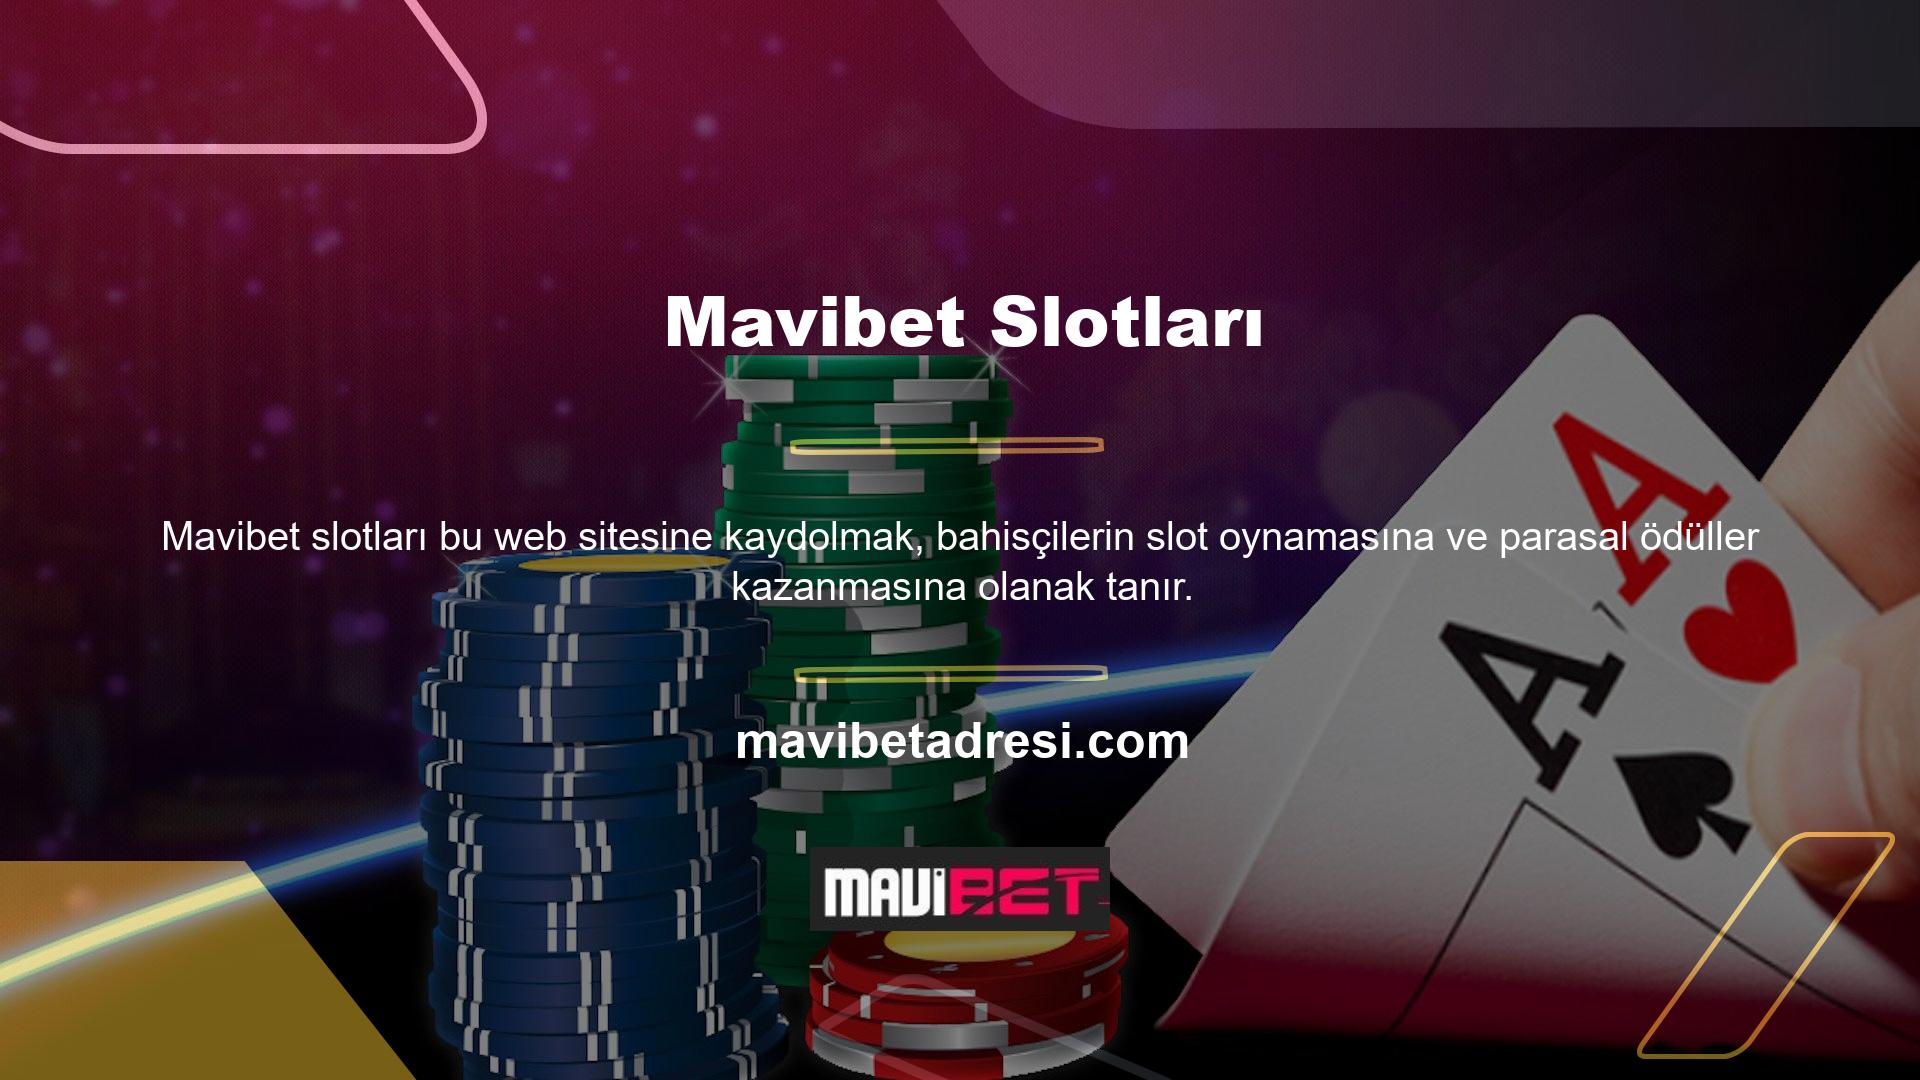 Mavibet slotu birçok kullanıcı tarafından beğenilen en popüler oyunlardan biridir